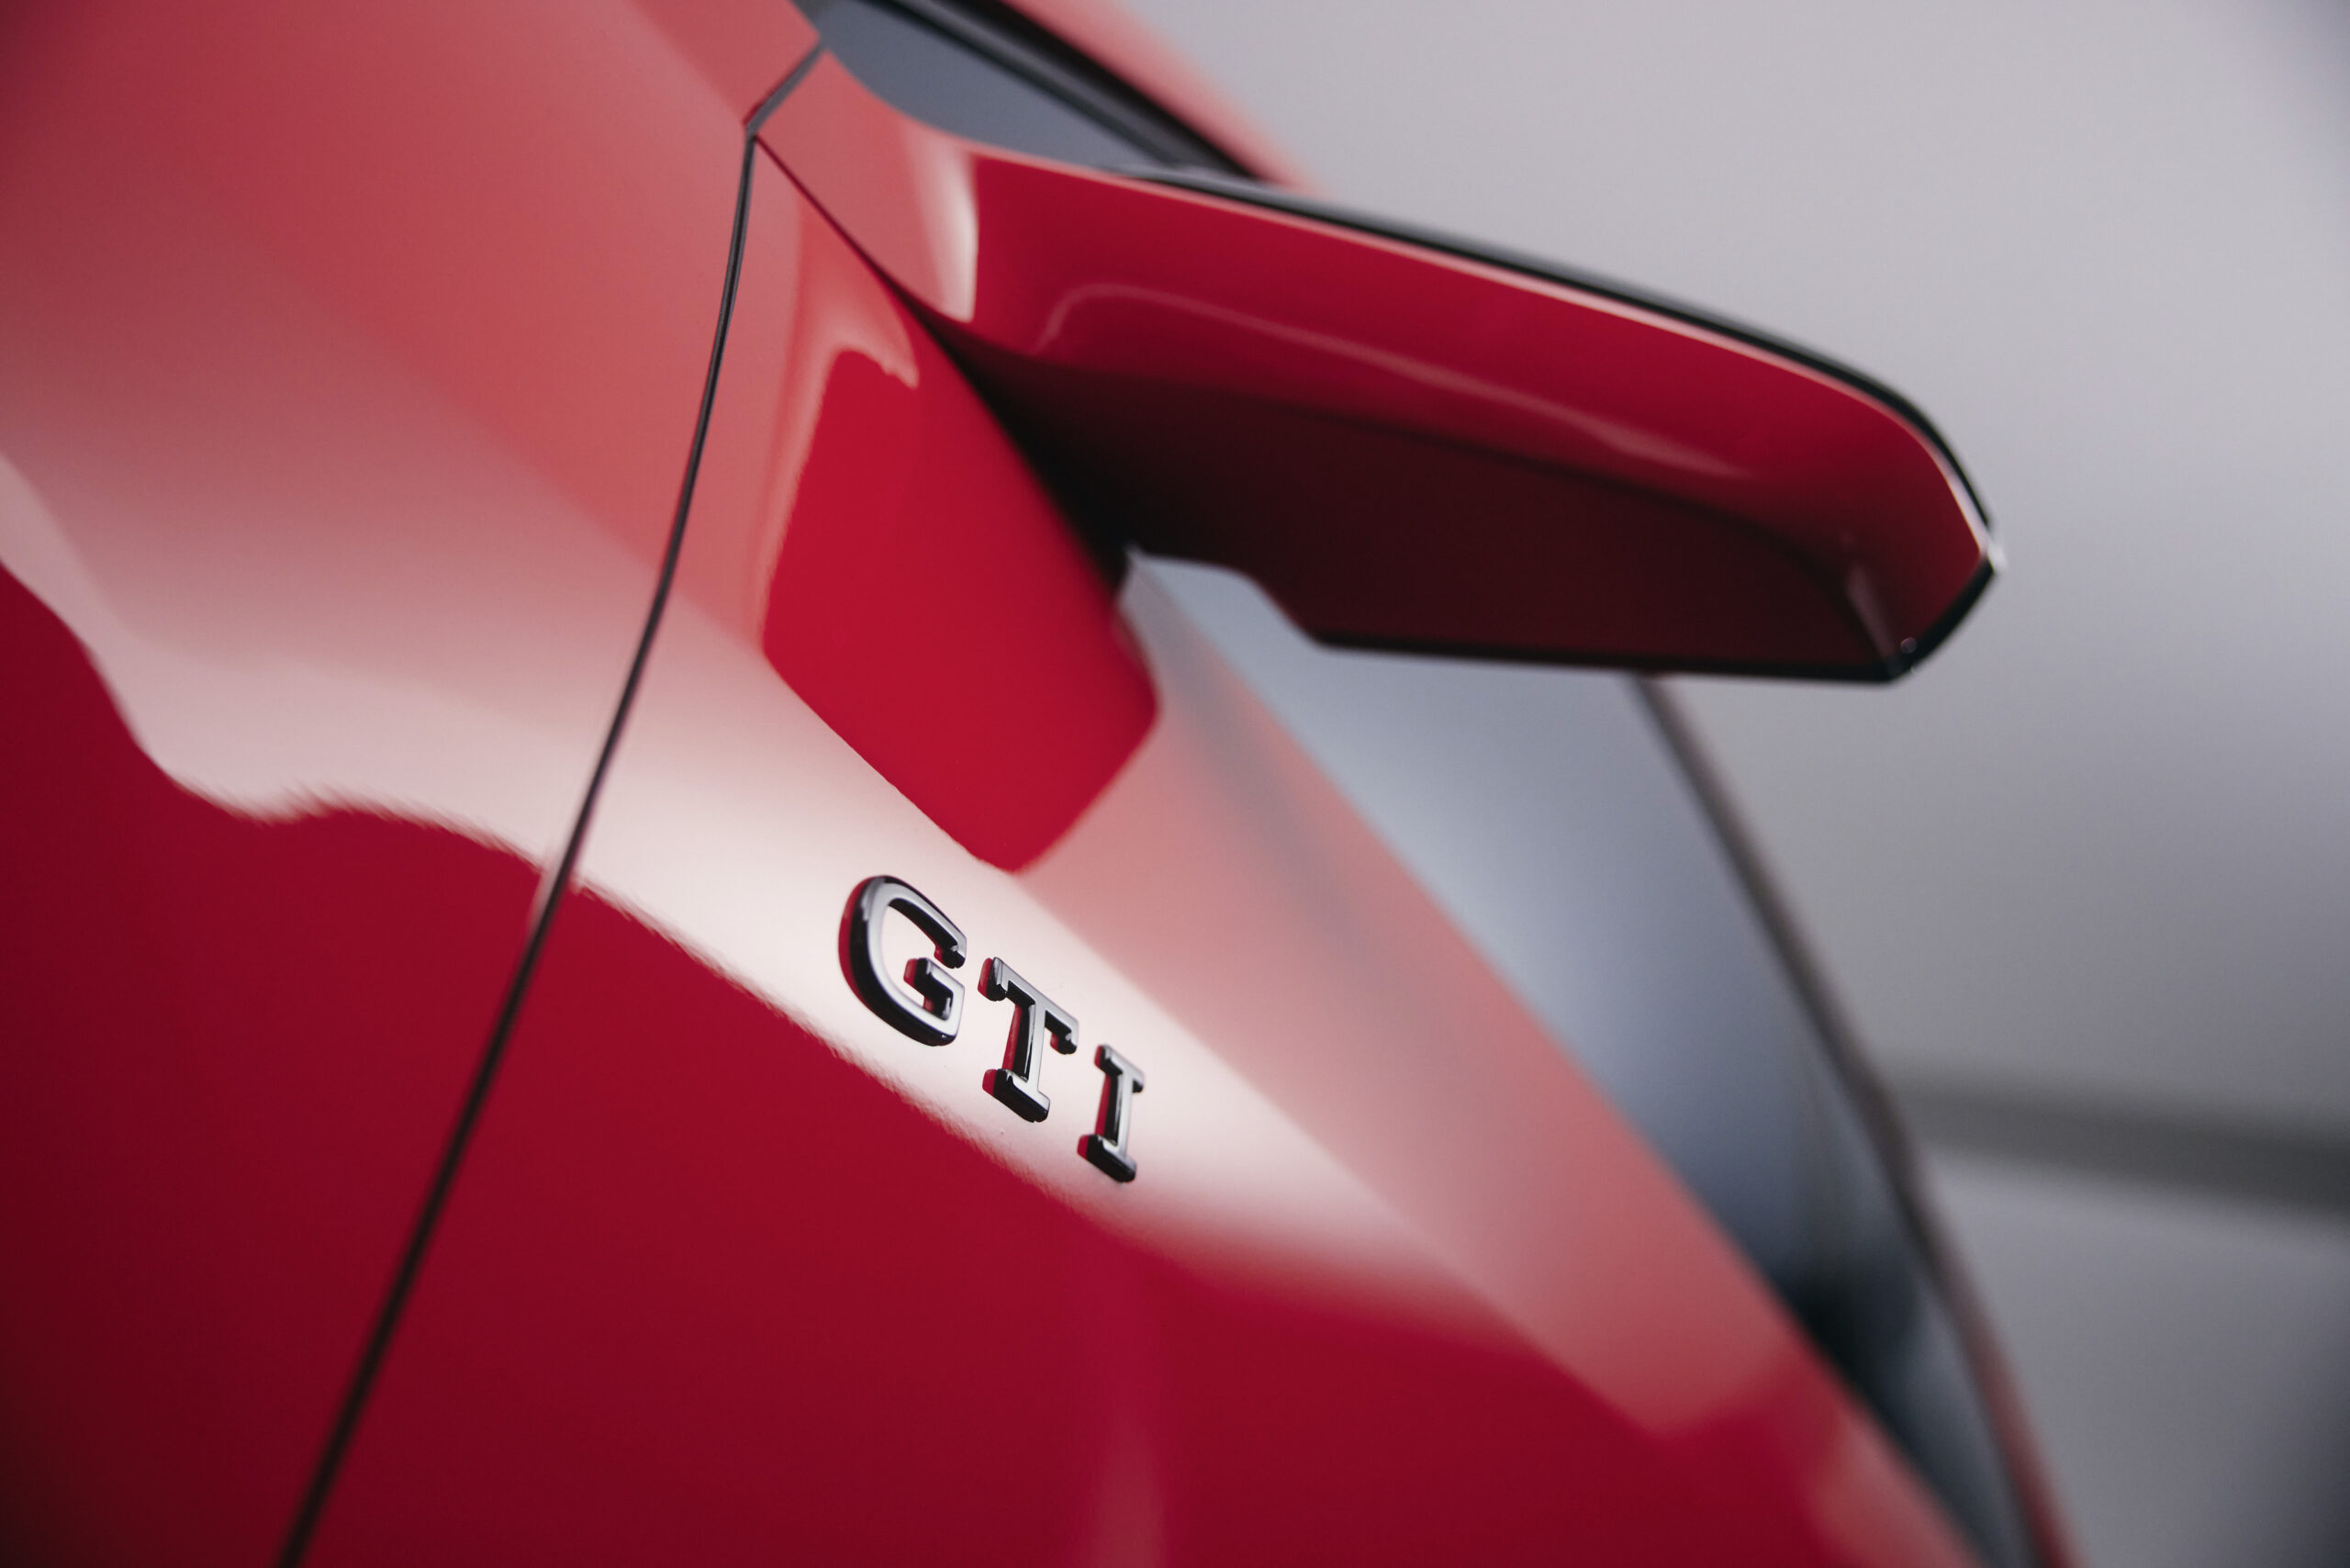 Volkswagen ID. GTI